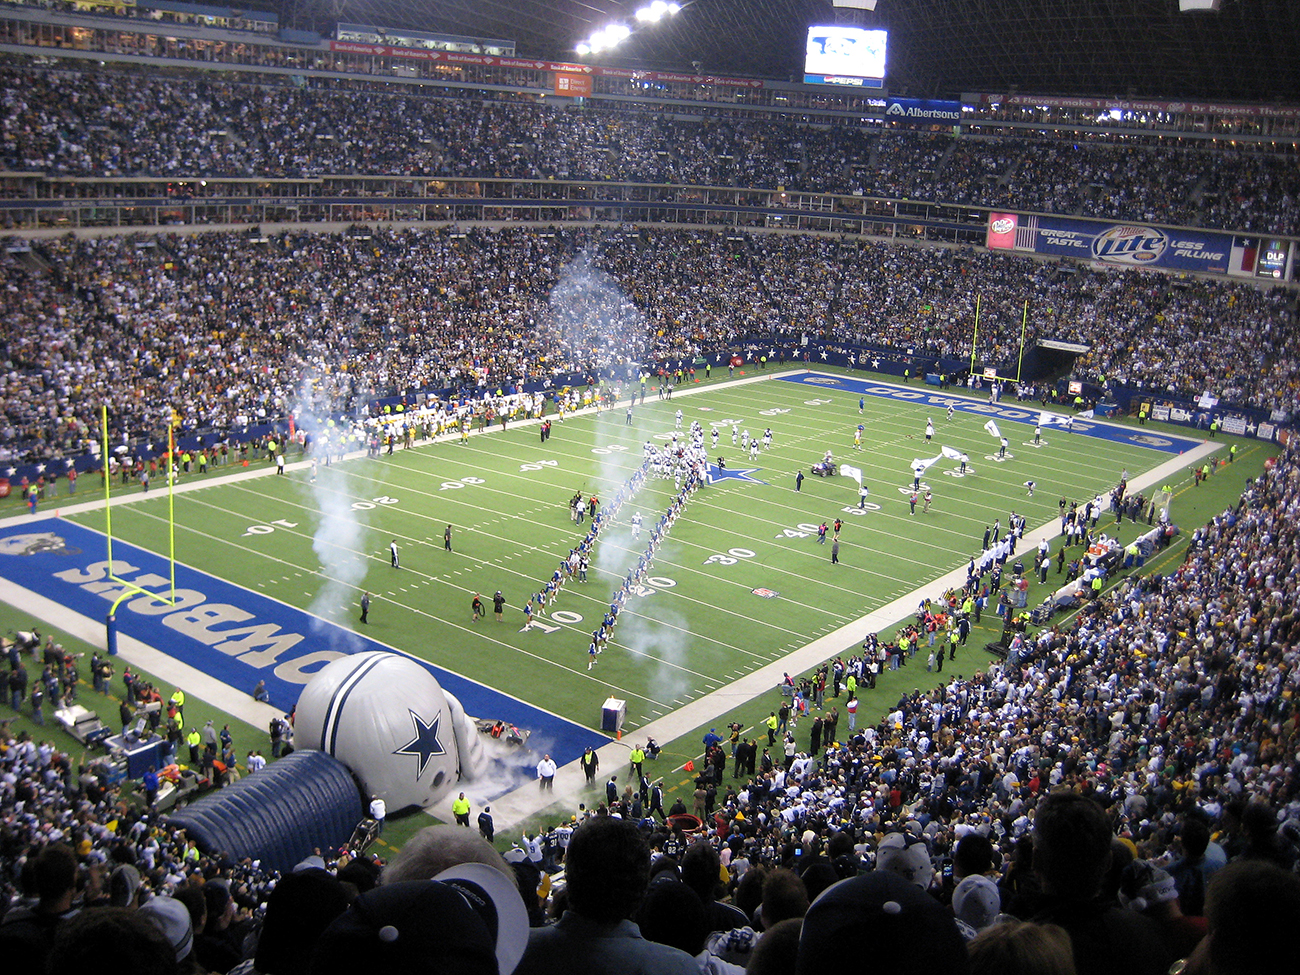 Una fotografía muestra el interior del estadio durante un partido de fútbol de los Dallas Cowboys.